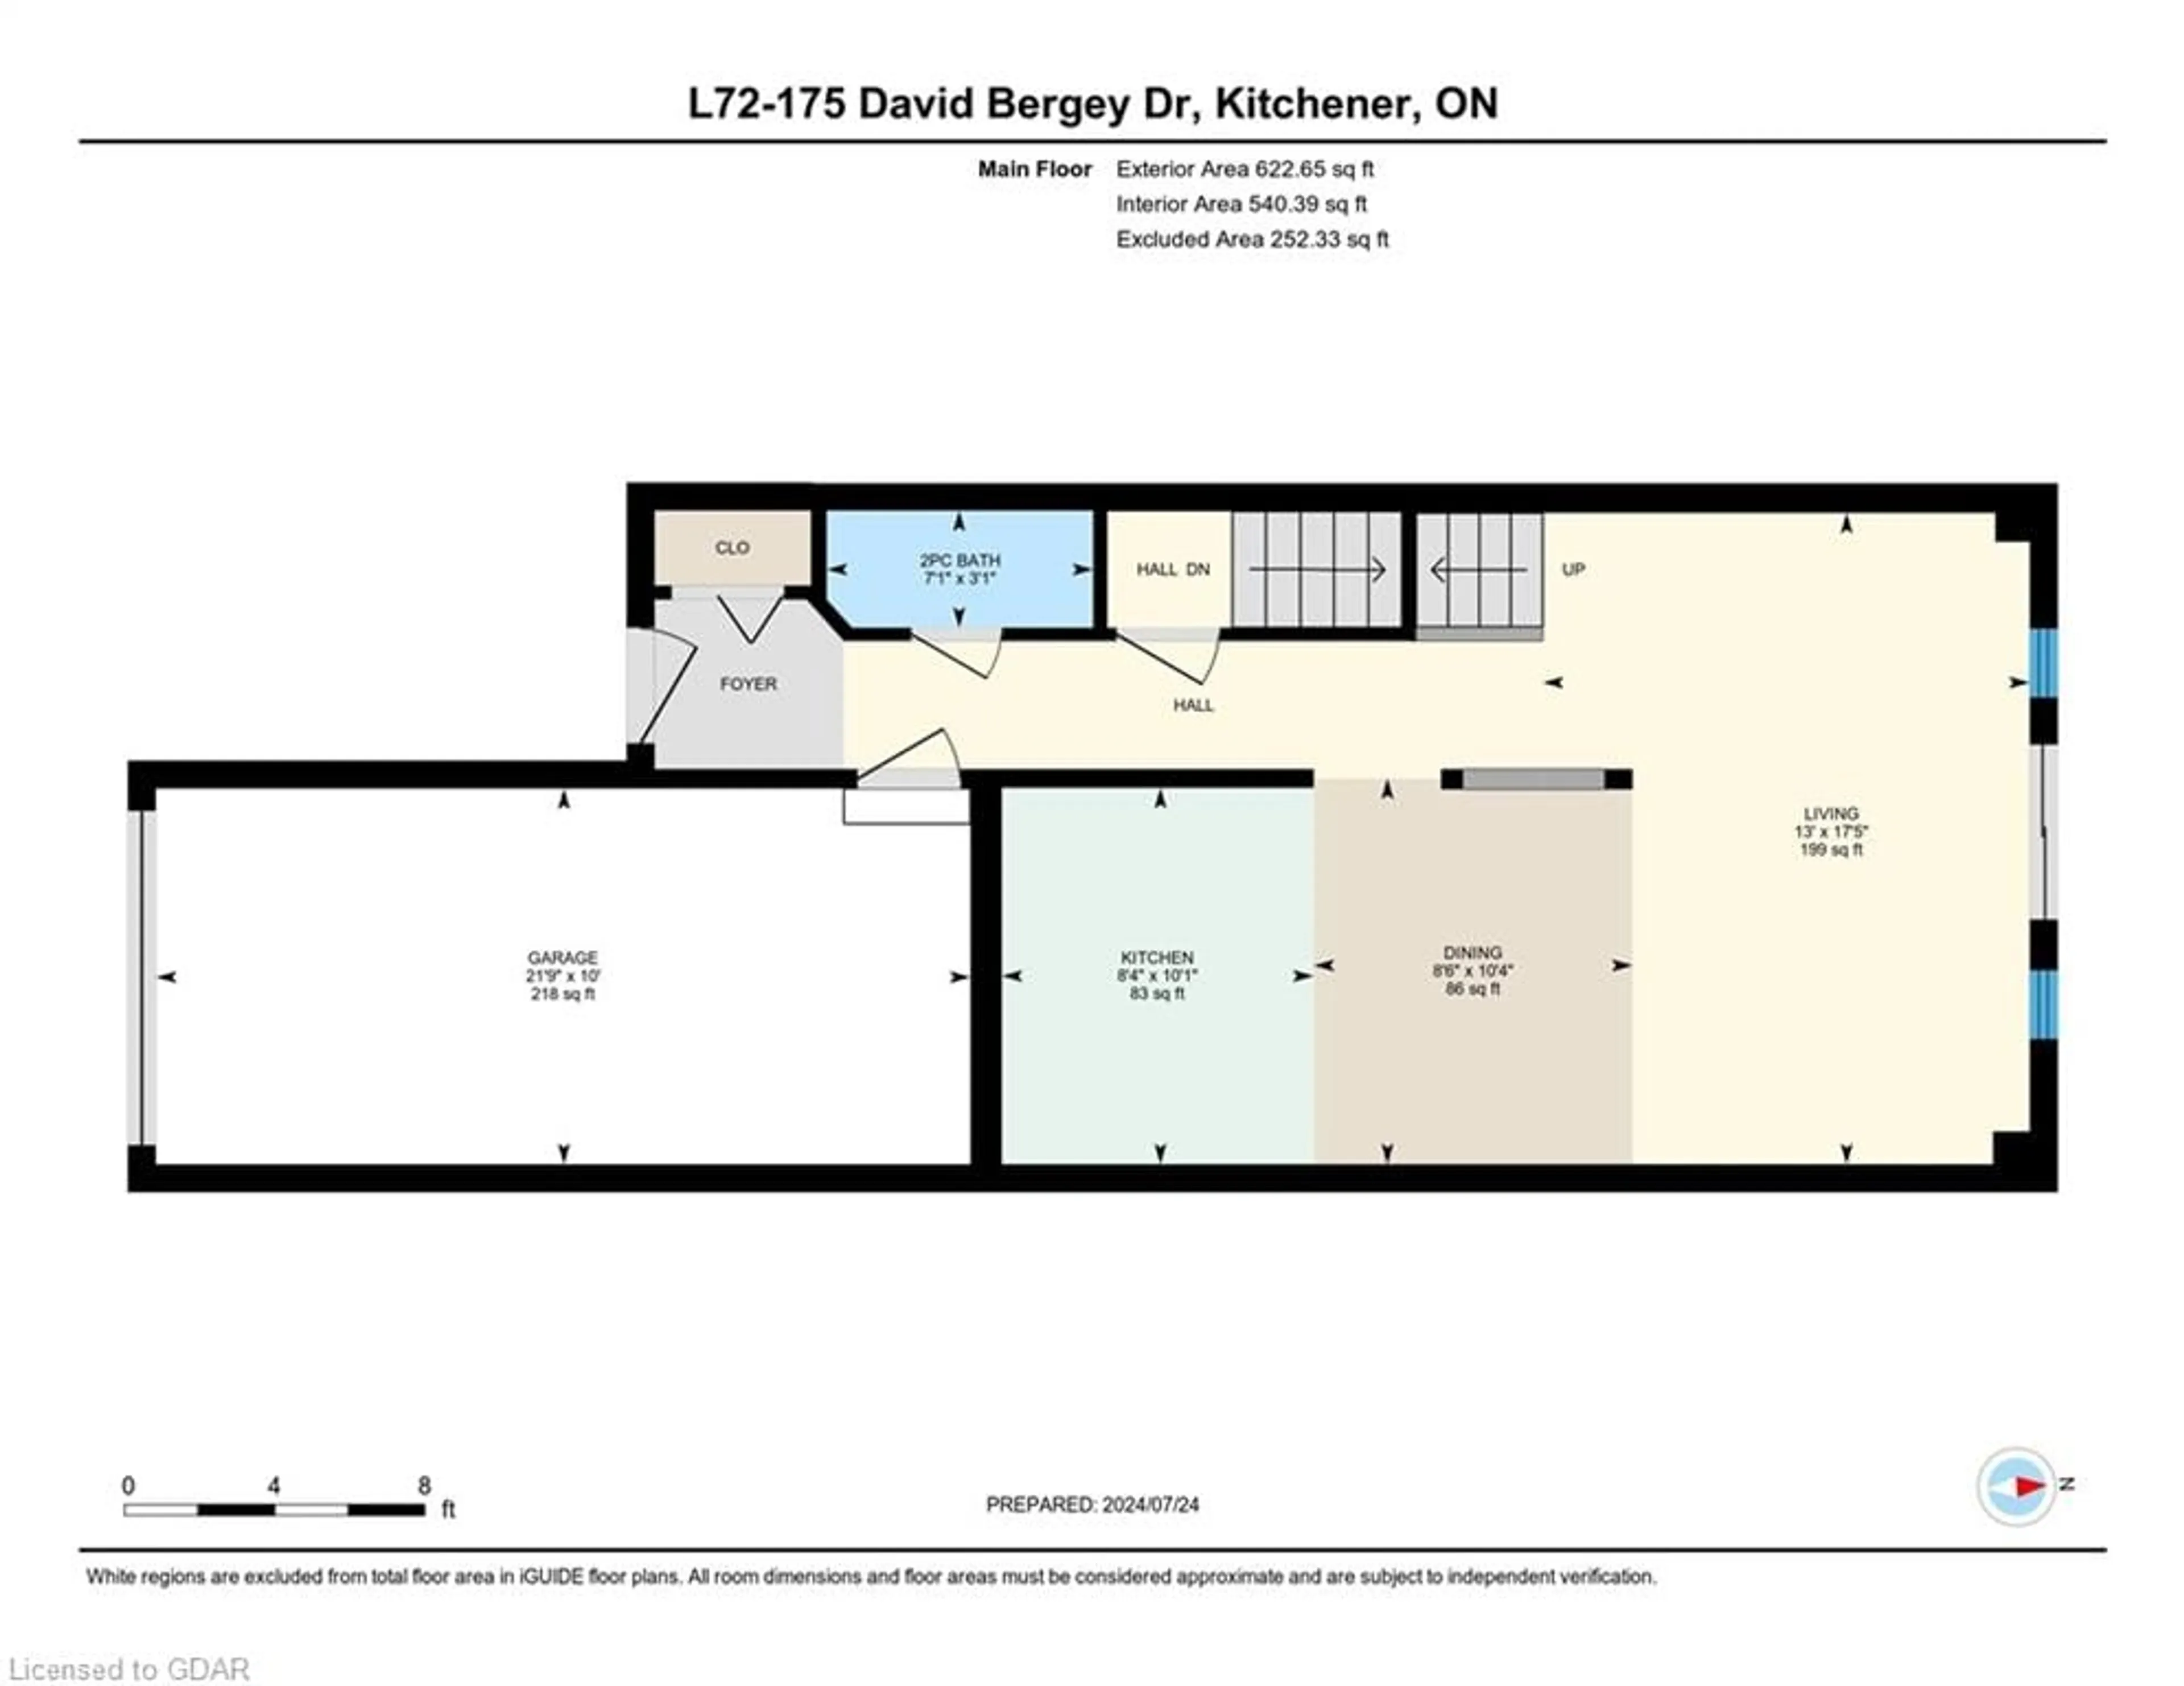 Floor plan for 175 David Bergey Dr #L72, Kitchener Ontario N2E 4H6